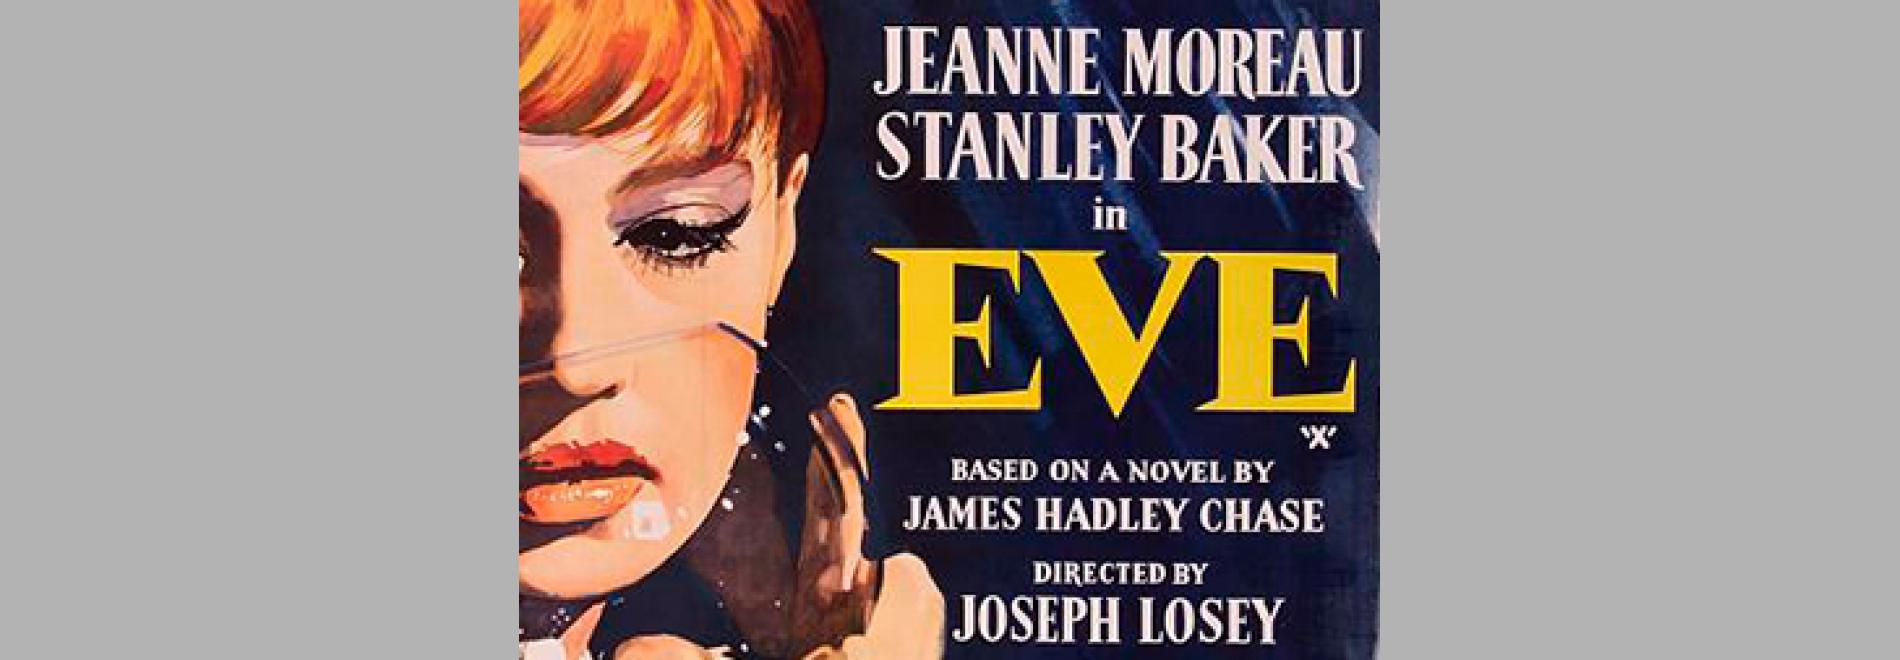 Eve (Joseph Losey, 1962)